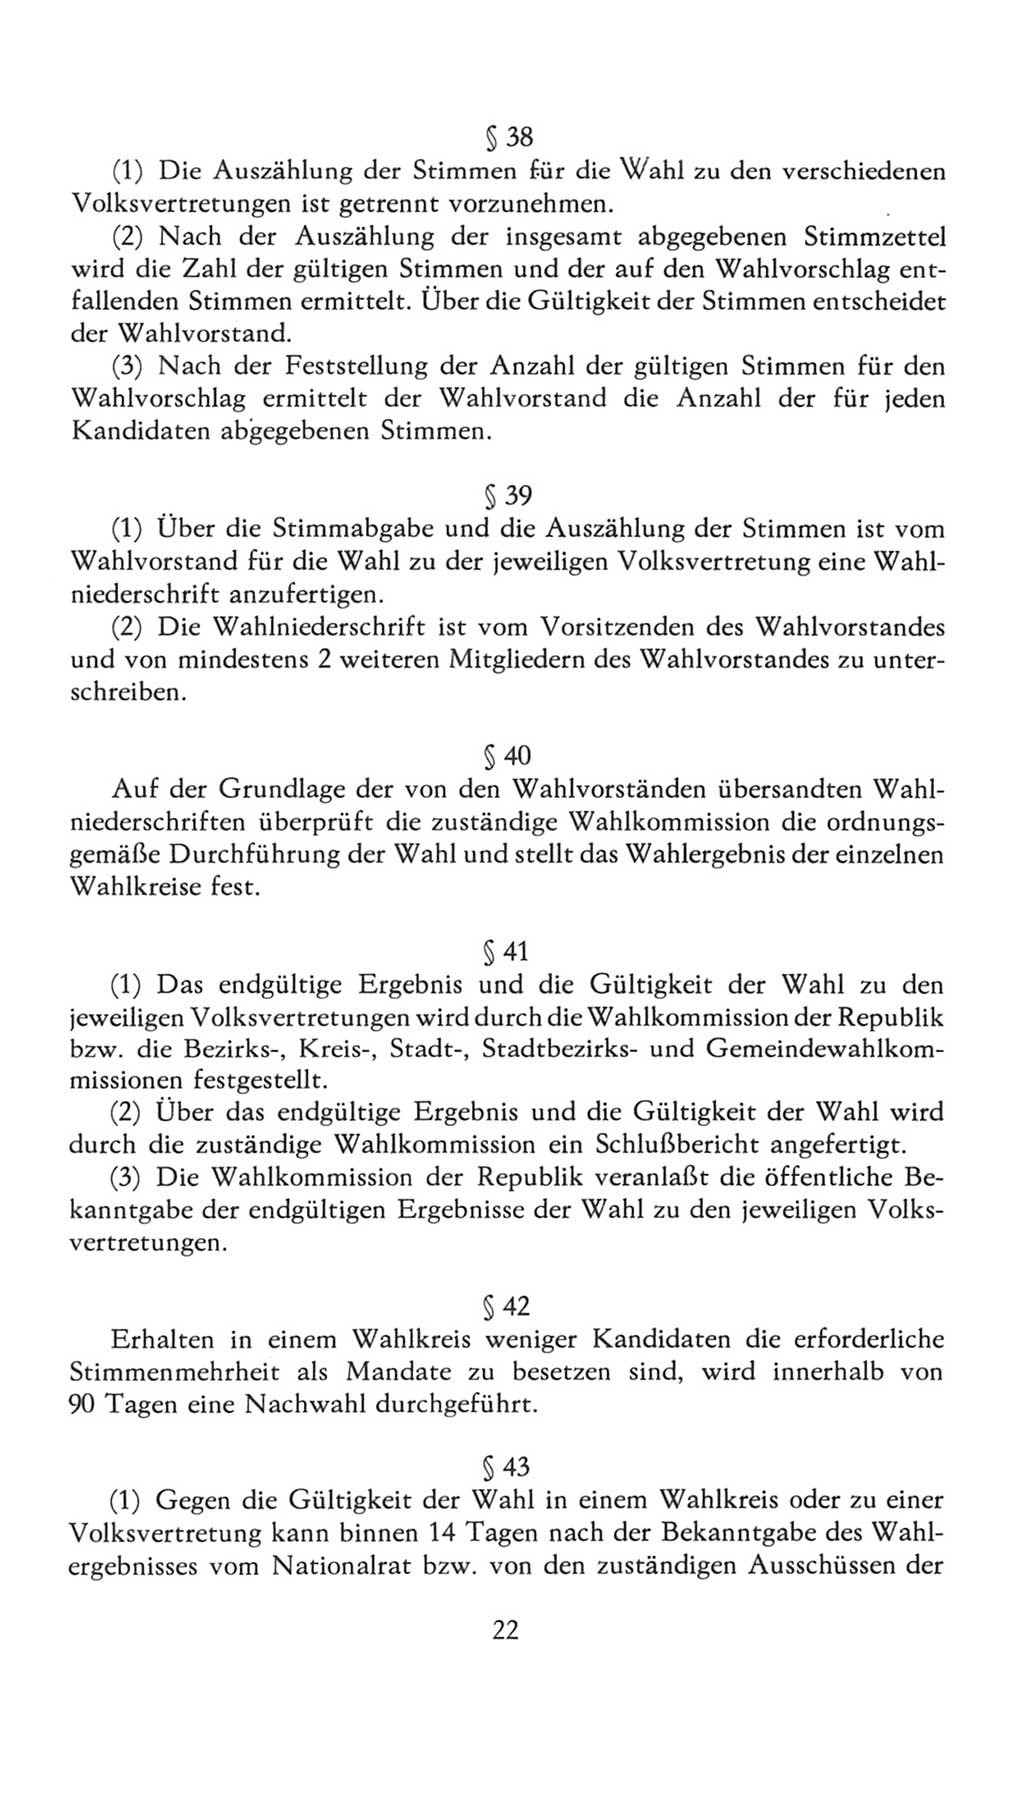 Volkskammer (VK) der Deutschen Demokratischen Republik (DDR), 7. Wahlperiode 1976-1981, Seite 22 (VK. DDR 7. WP. 1976-1981, S. 22)